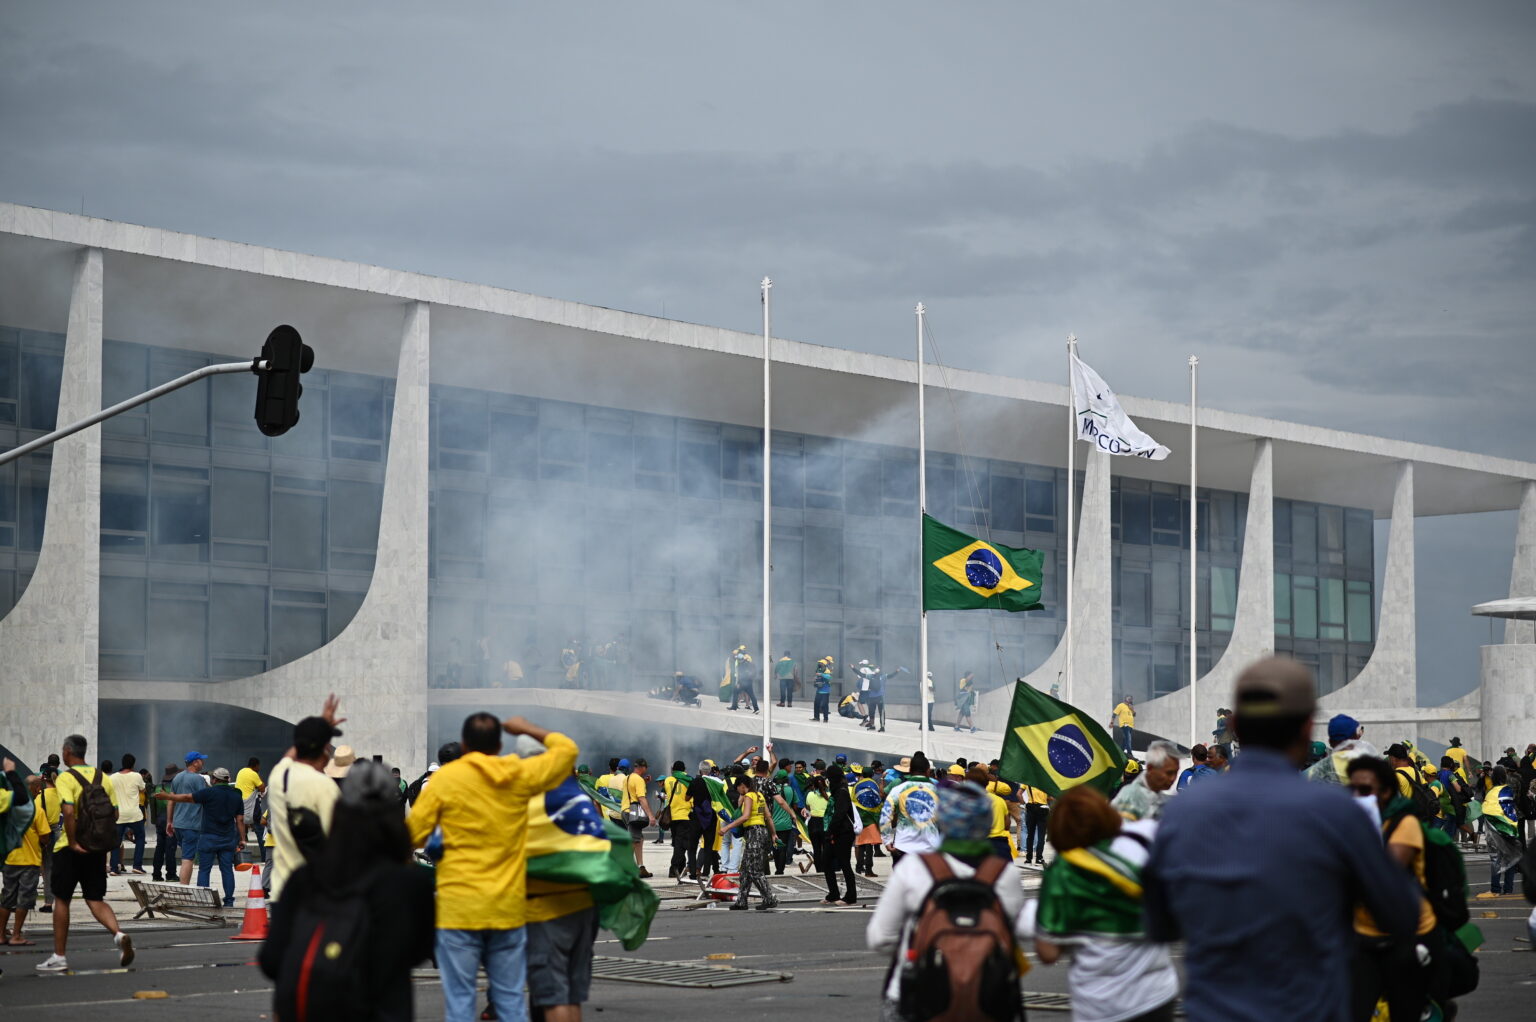 Liderii mondiali, despre gravele evenimente care au avut loc duminică în Brazilia